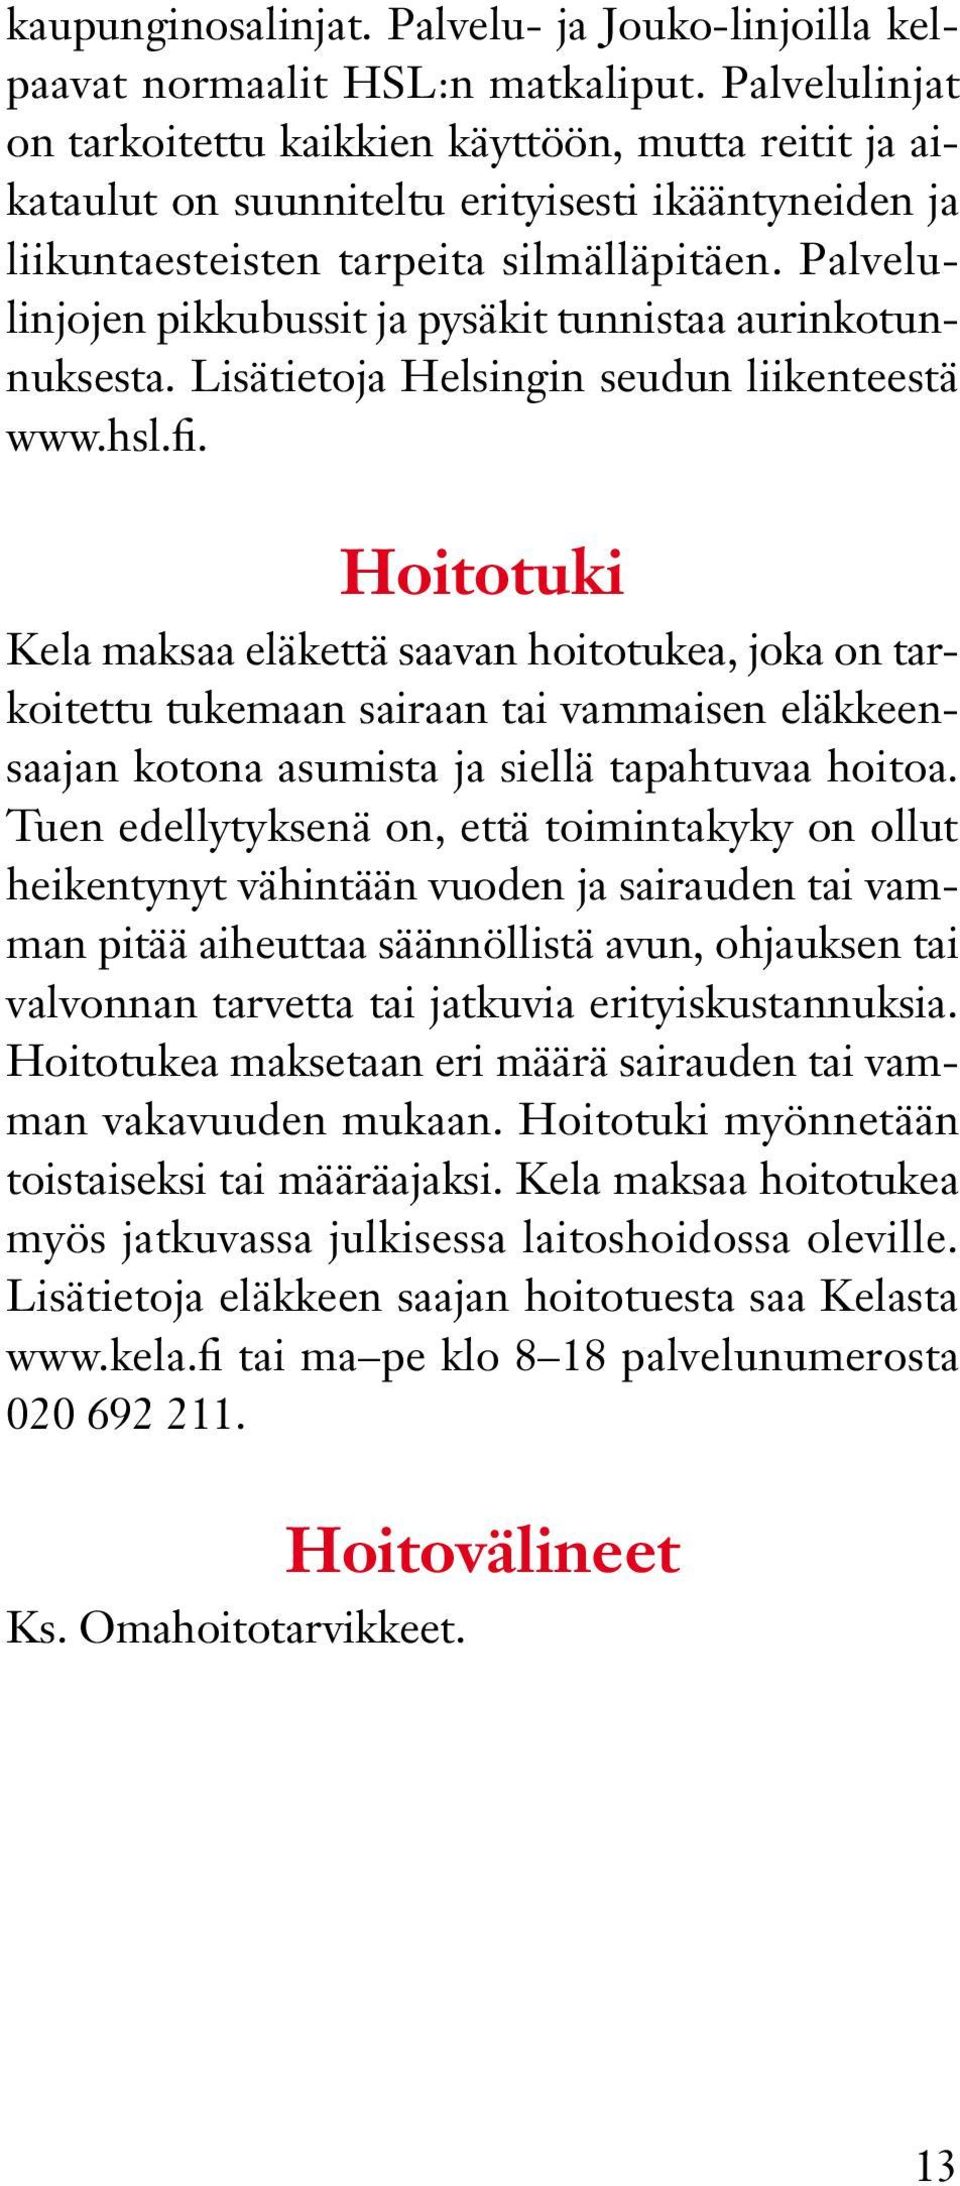 Palvelulinjojen pikkubussit ja pysäkit tunnistaa aurinkotunnuksesta. Lisätietoja Helsingin seudun liikenteestä www.hsl.fi.